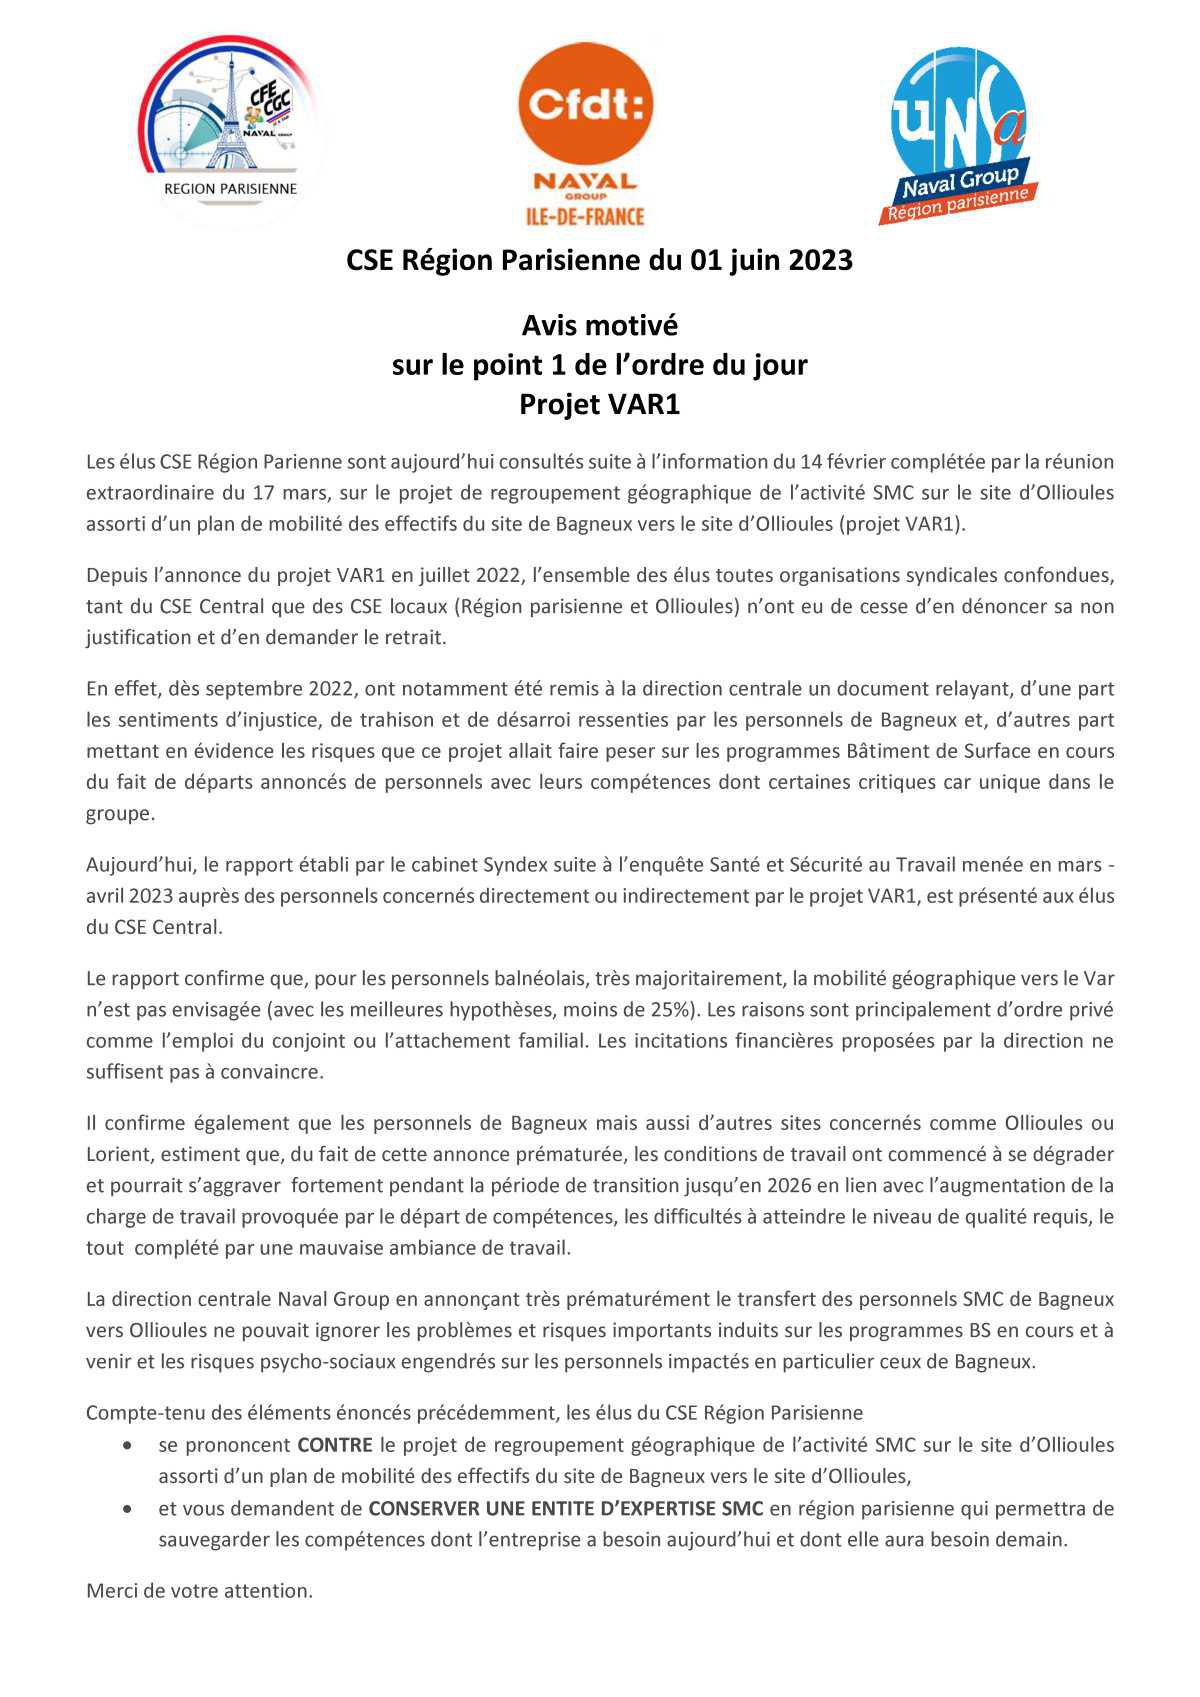 Projet de Fermeture du Site de Bagneux par la Direction et Communication Intersyndicale - Juin 2023 